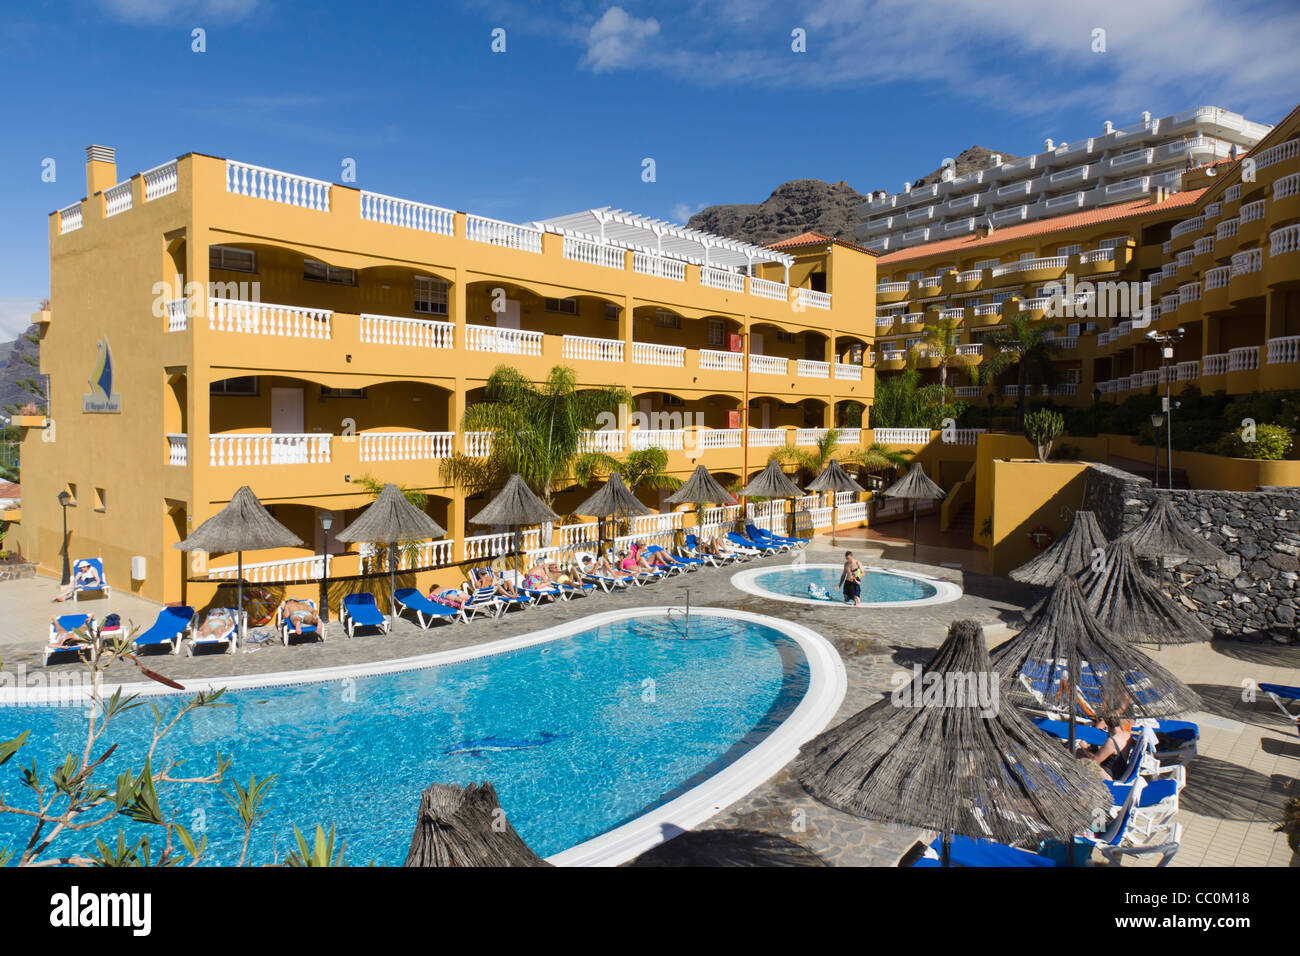 El Marques Palace Hotel, Puerto de Santiago, Tenerife Stock Photo - Alamy